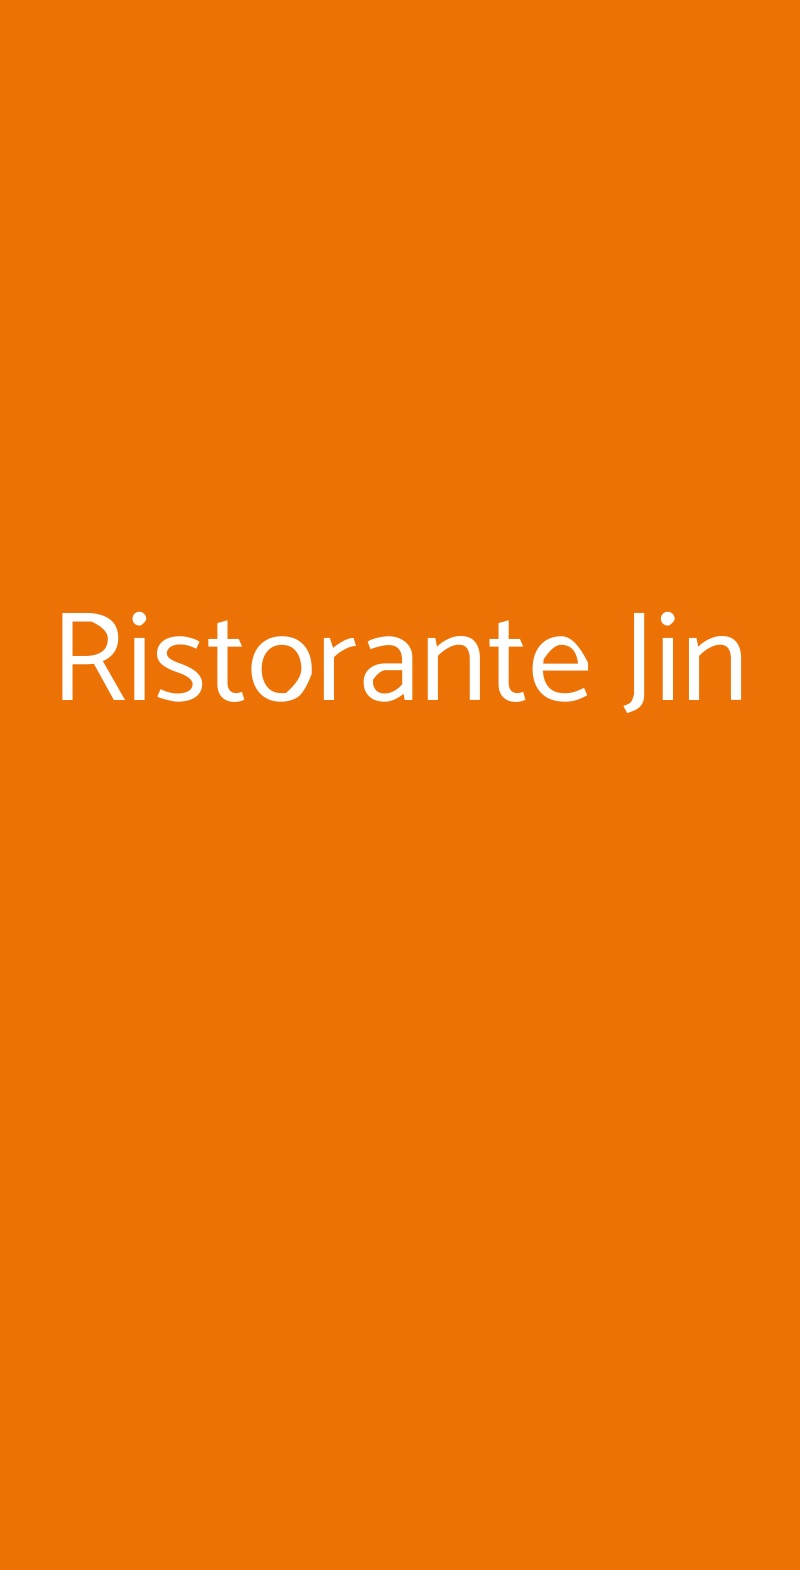 Ristorante Jin Milano menù 1 pagina